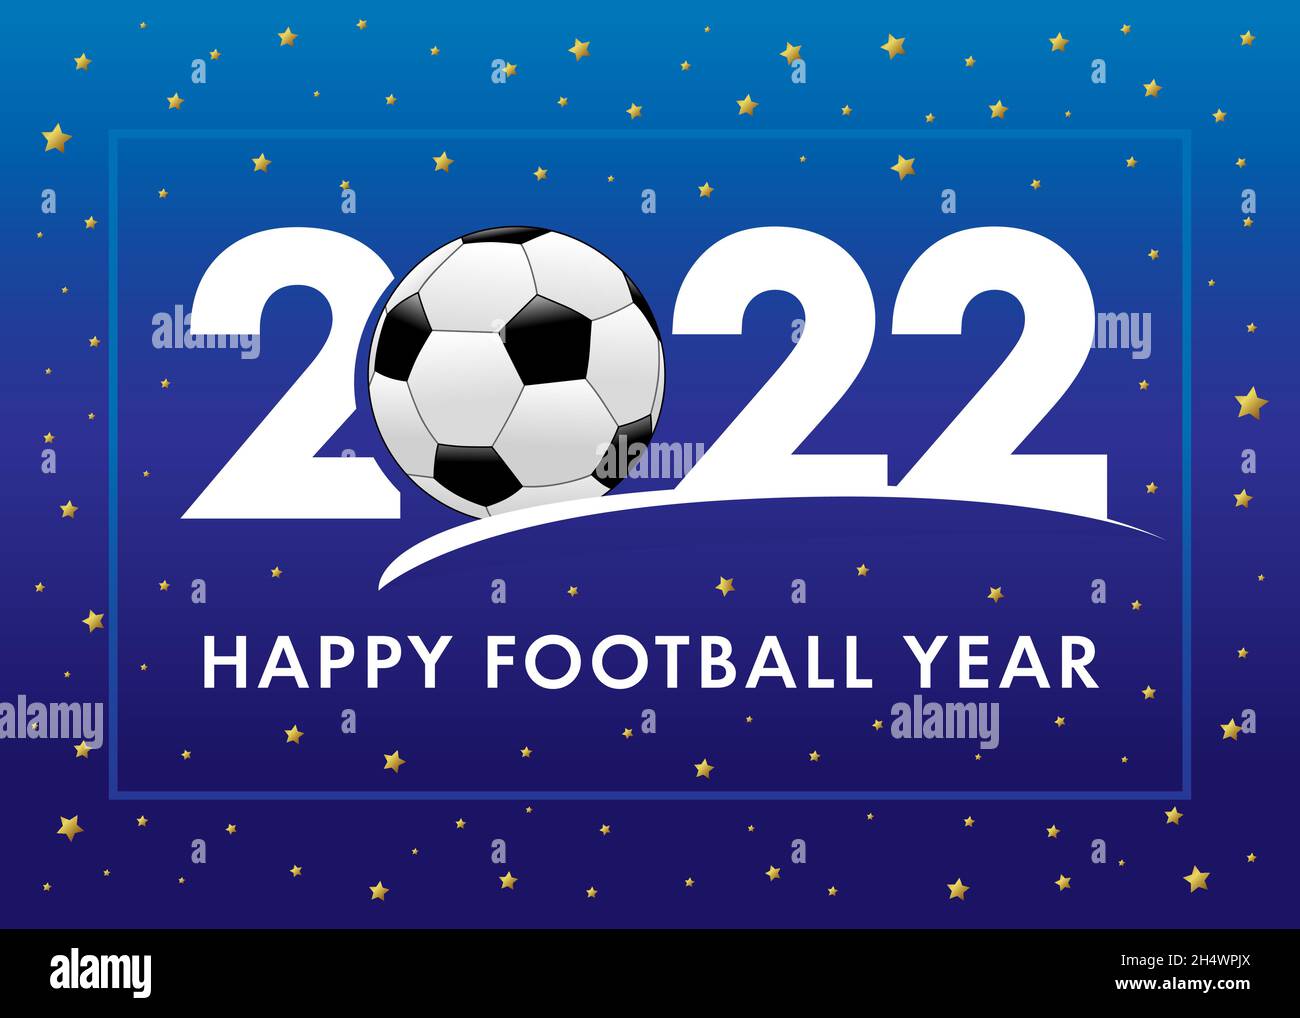 Blaues Banner „Happy Football Year 2022“. Logo in flacher Form. Neujahrsschrift 2022 mit Kugel- und goldfarbenen Sternen. Fußball-Sportturnier im Hintergrund Stock Vektor